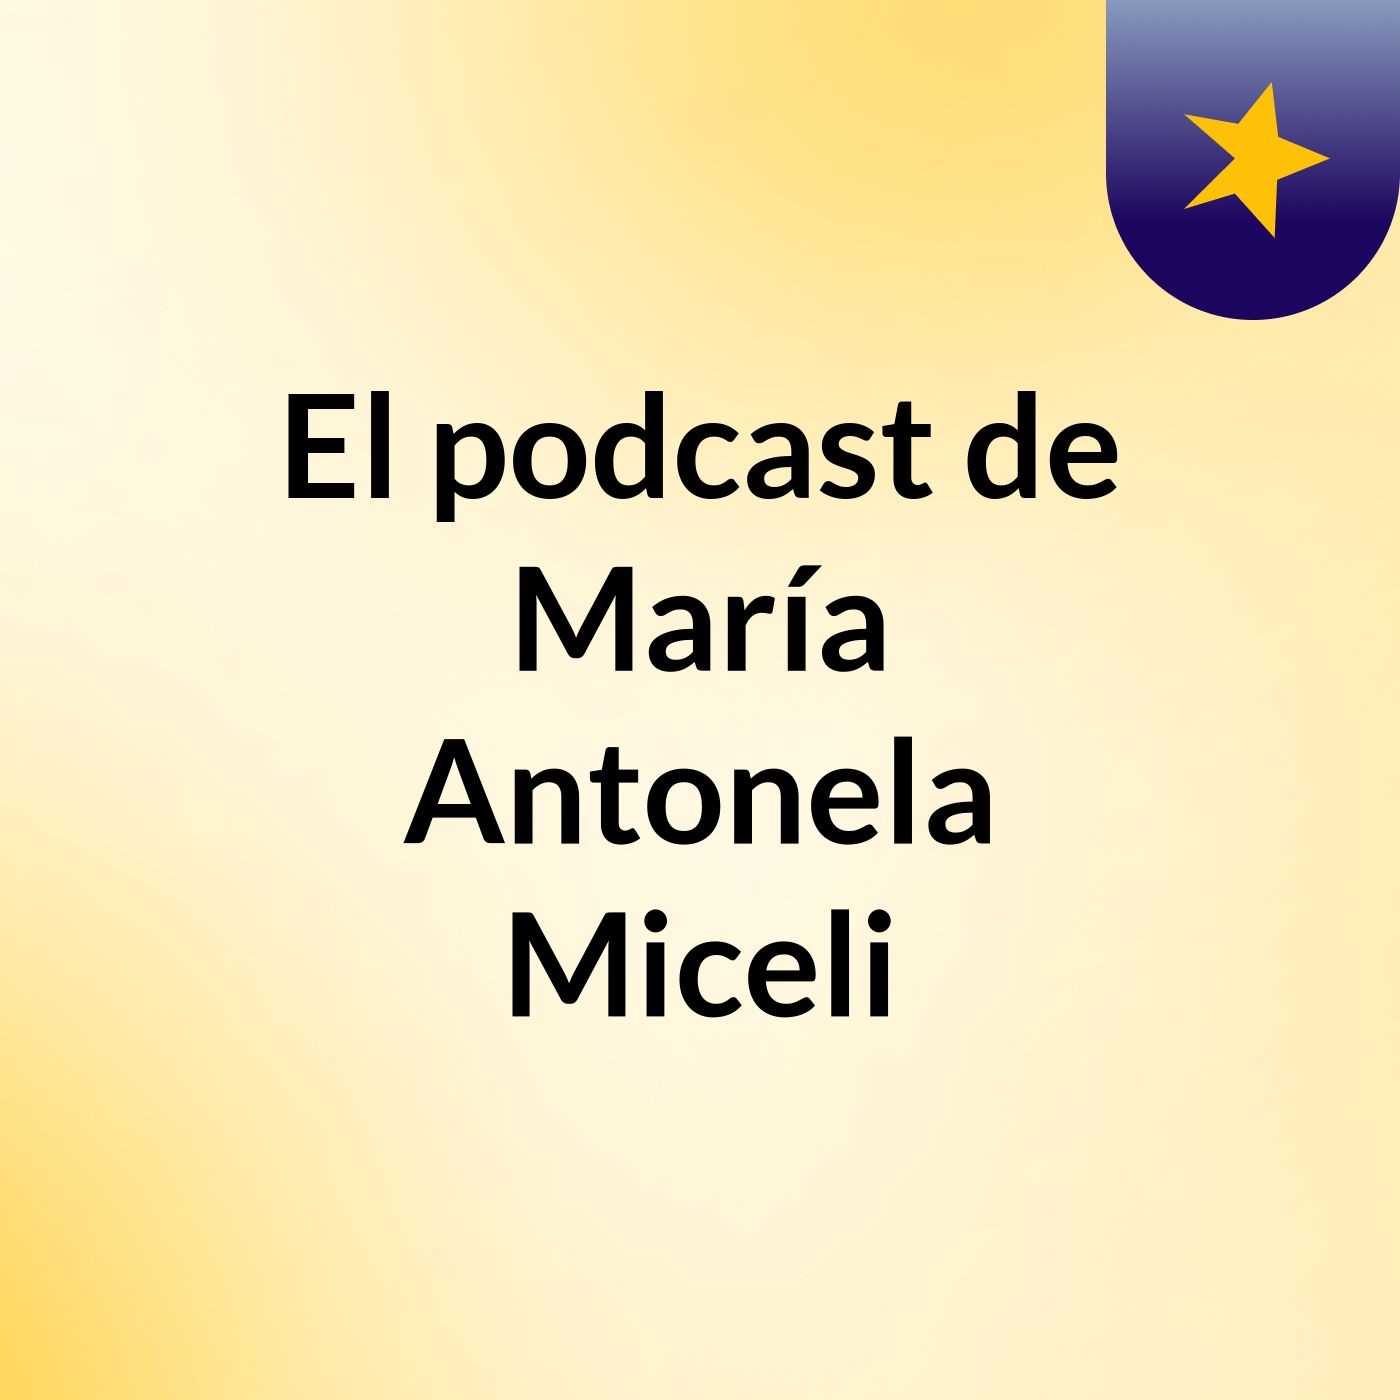 El podcast de María Antonela Miceli